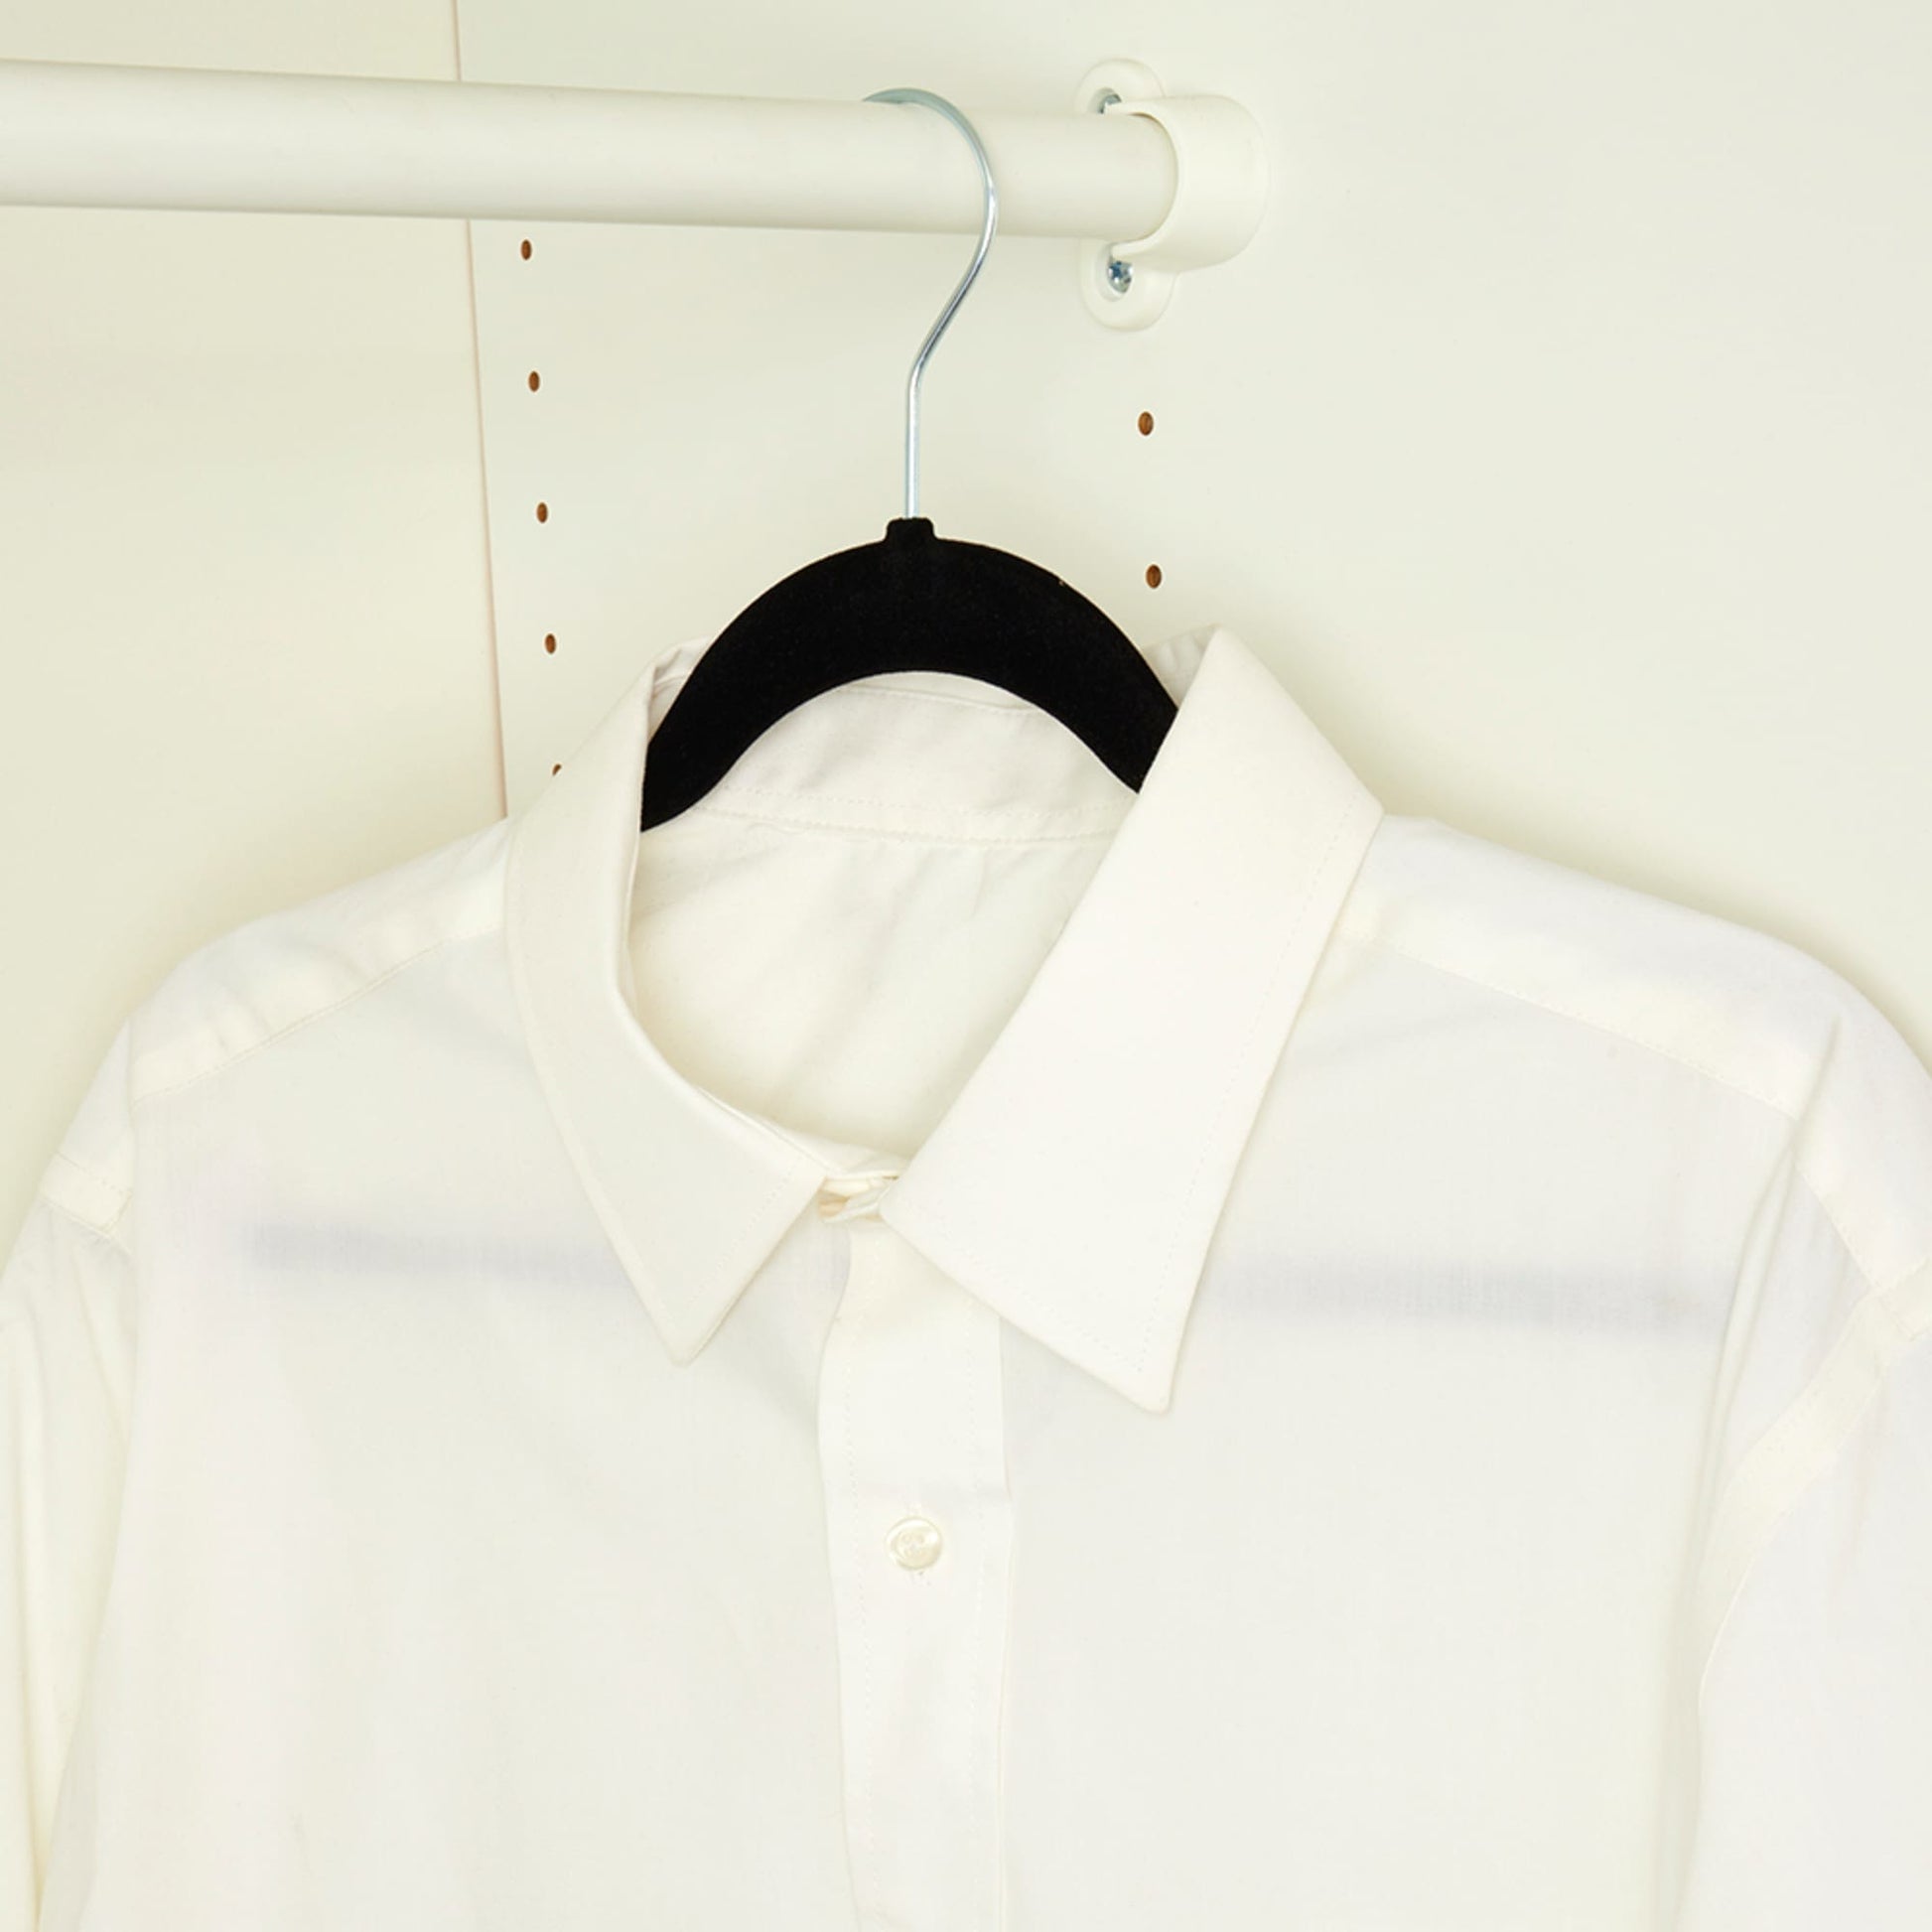  Simplify 10 Super Slim Velvet Huggable Hangers in Black : Home  & Kitchen